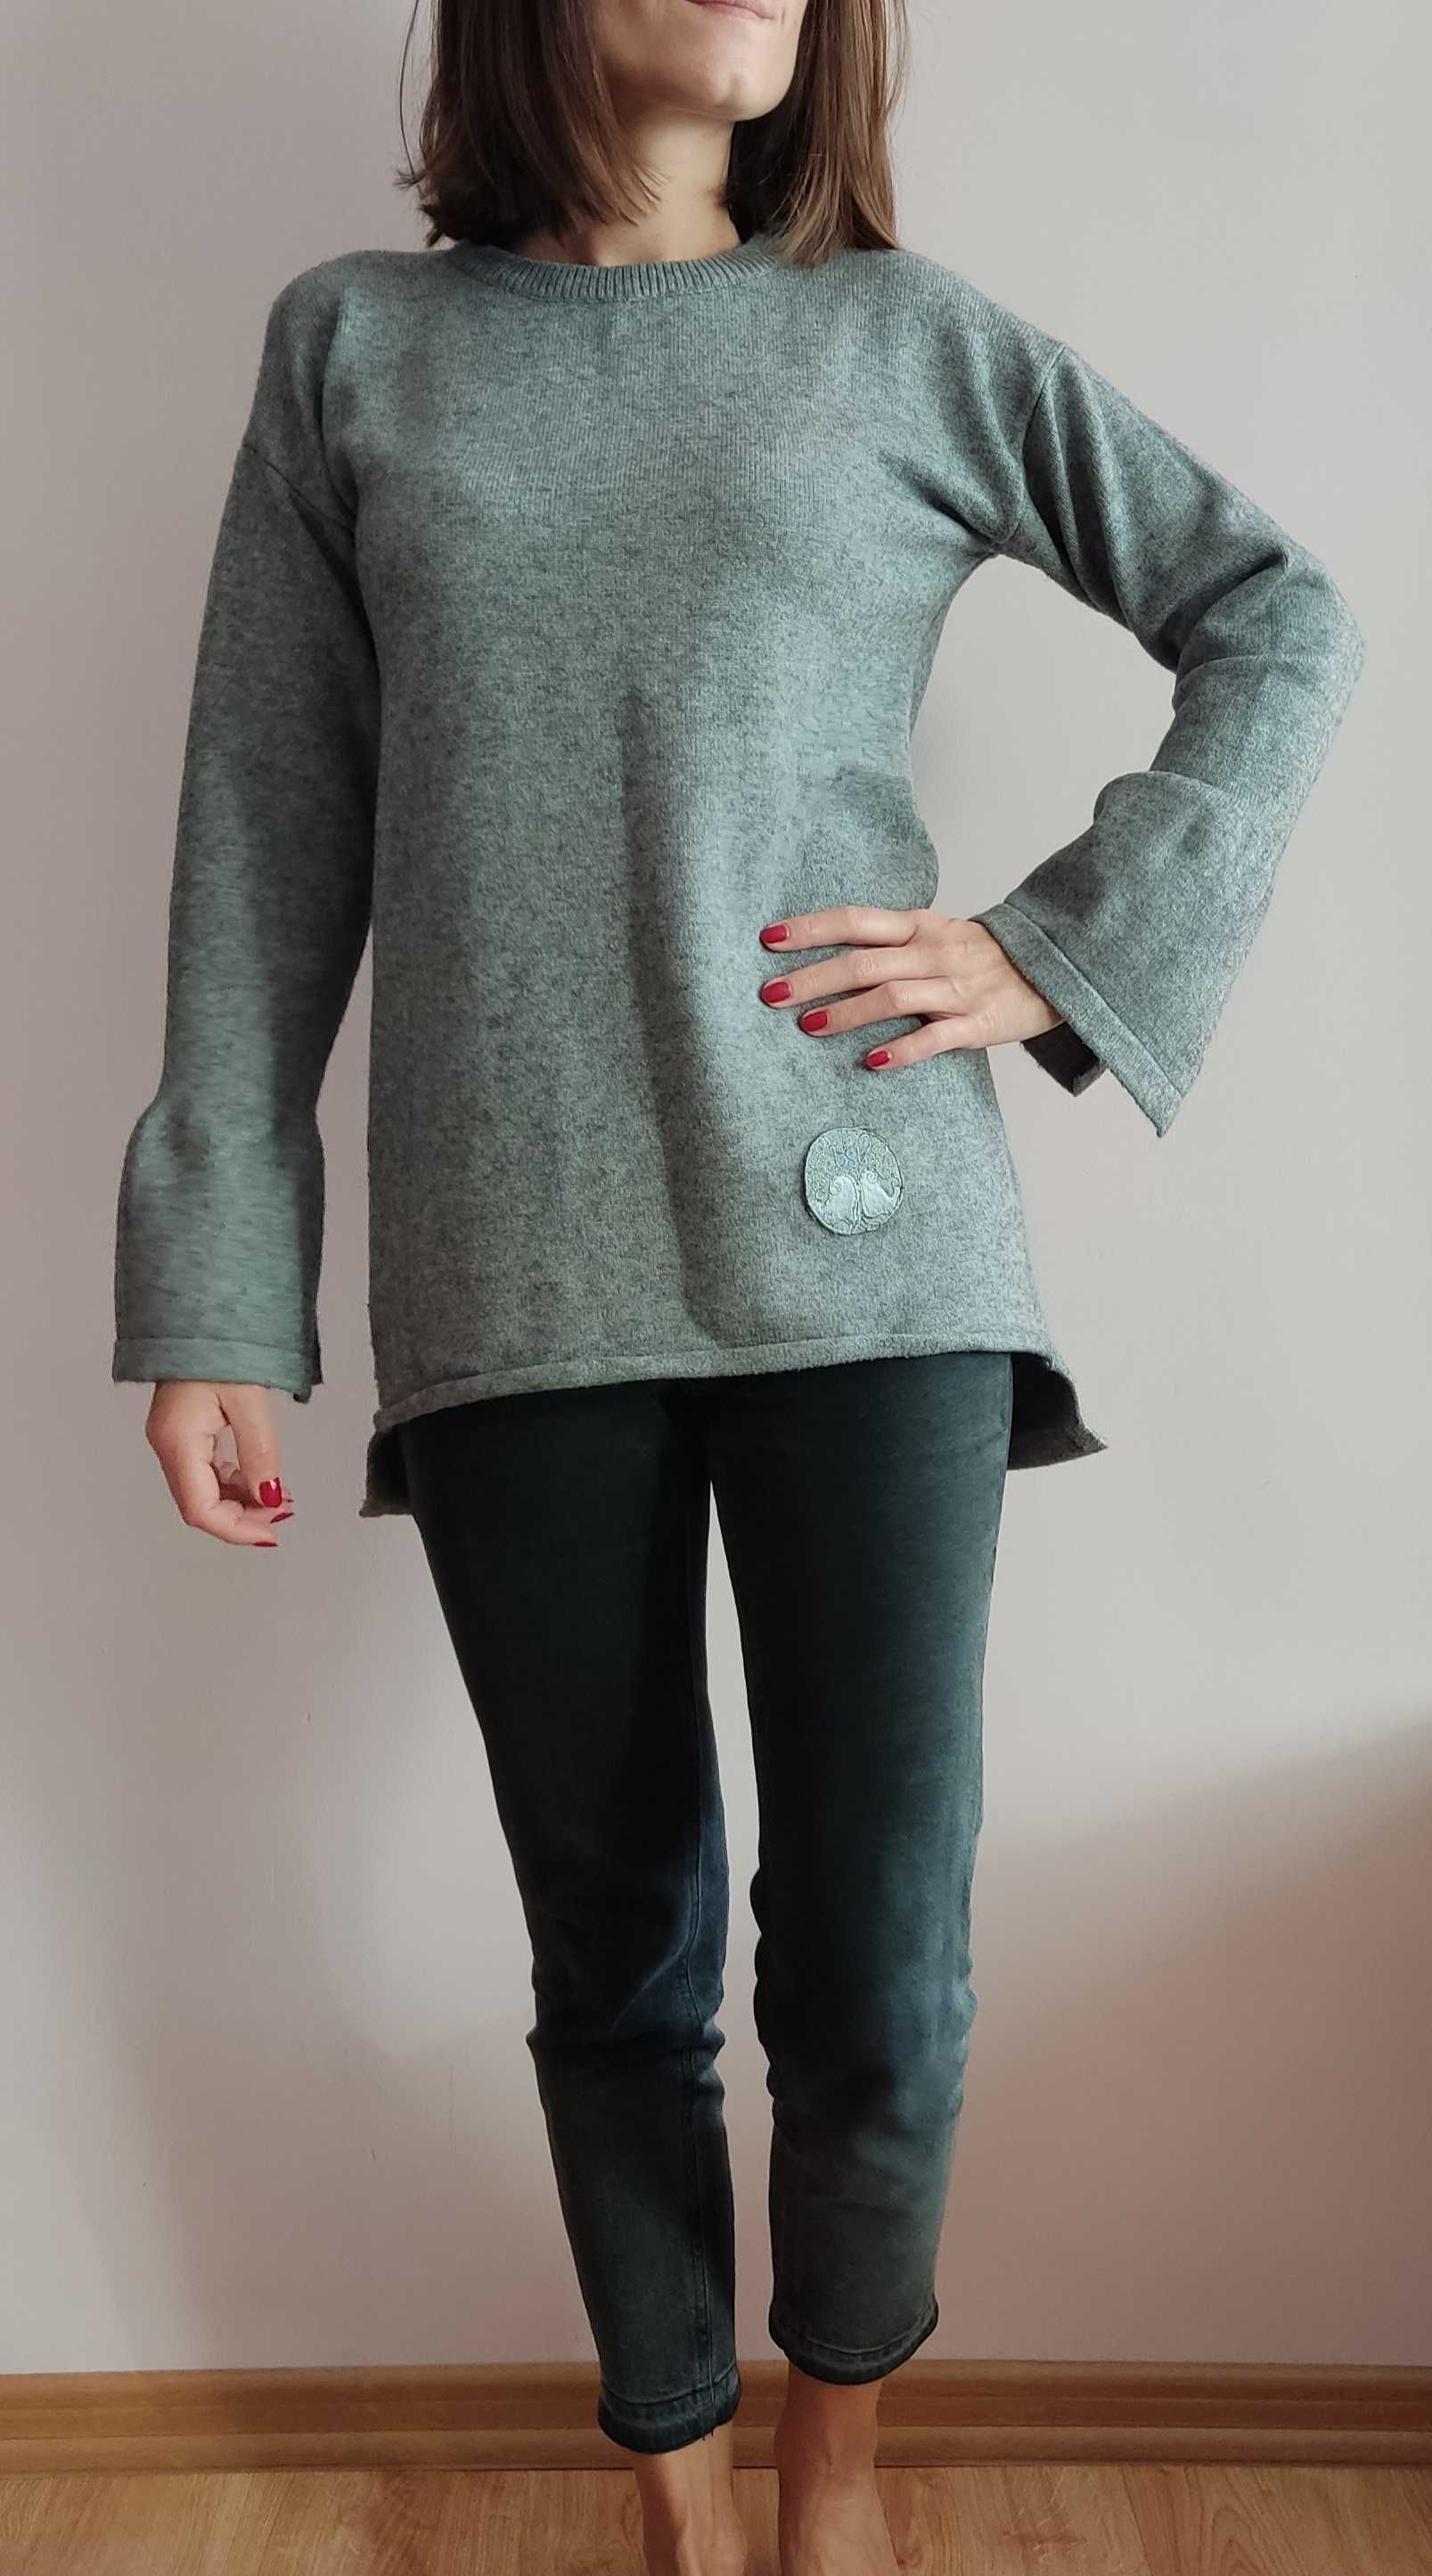 Ciepły szary sweter, rozmiar S/M